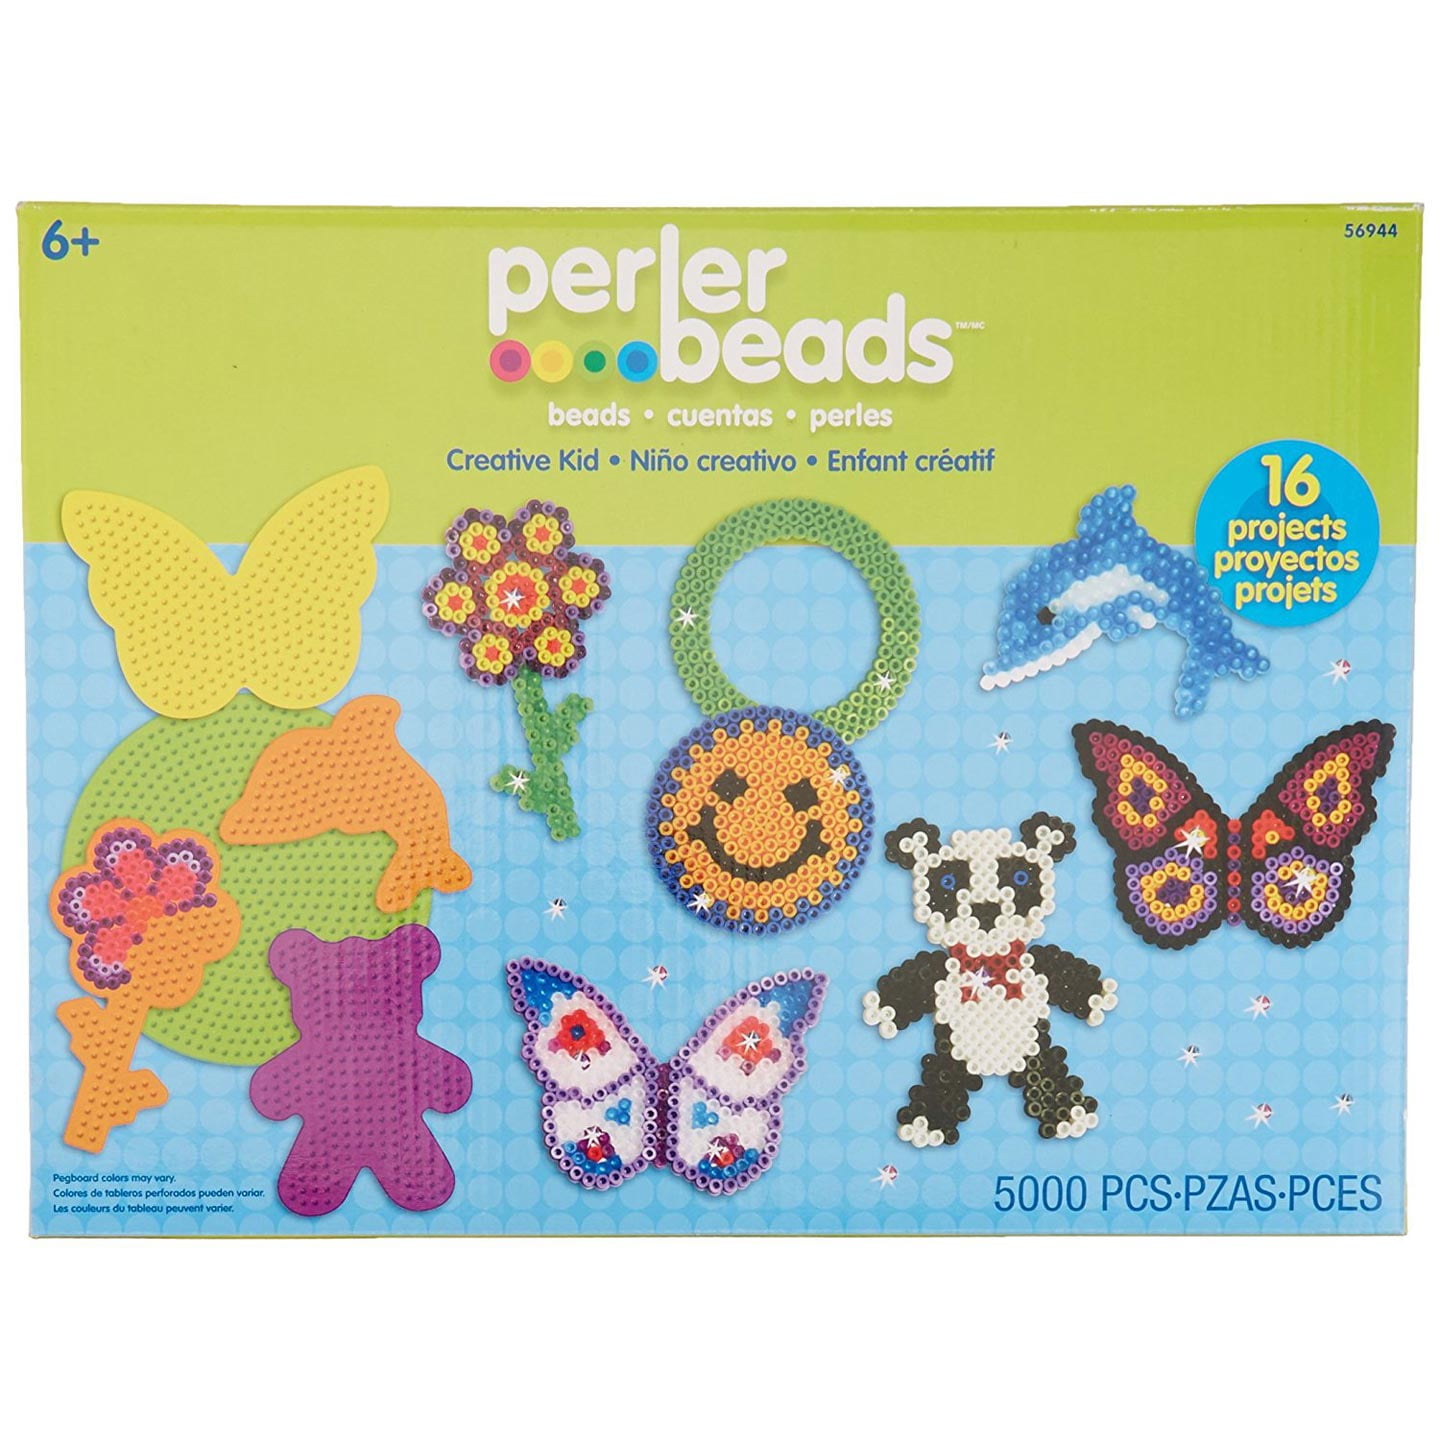 Hama Beads Blister Pack Gift Set Kit Boys Girls Pegboards Peg Board Bead Art